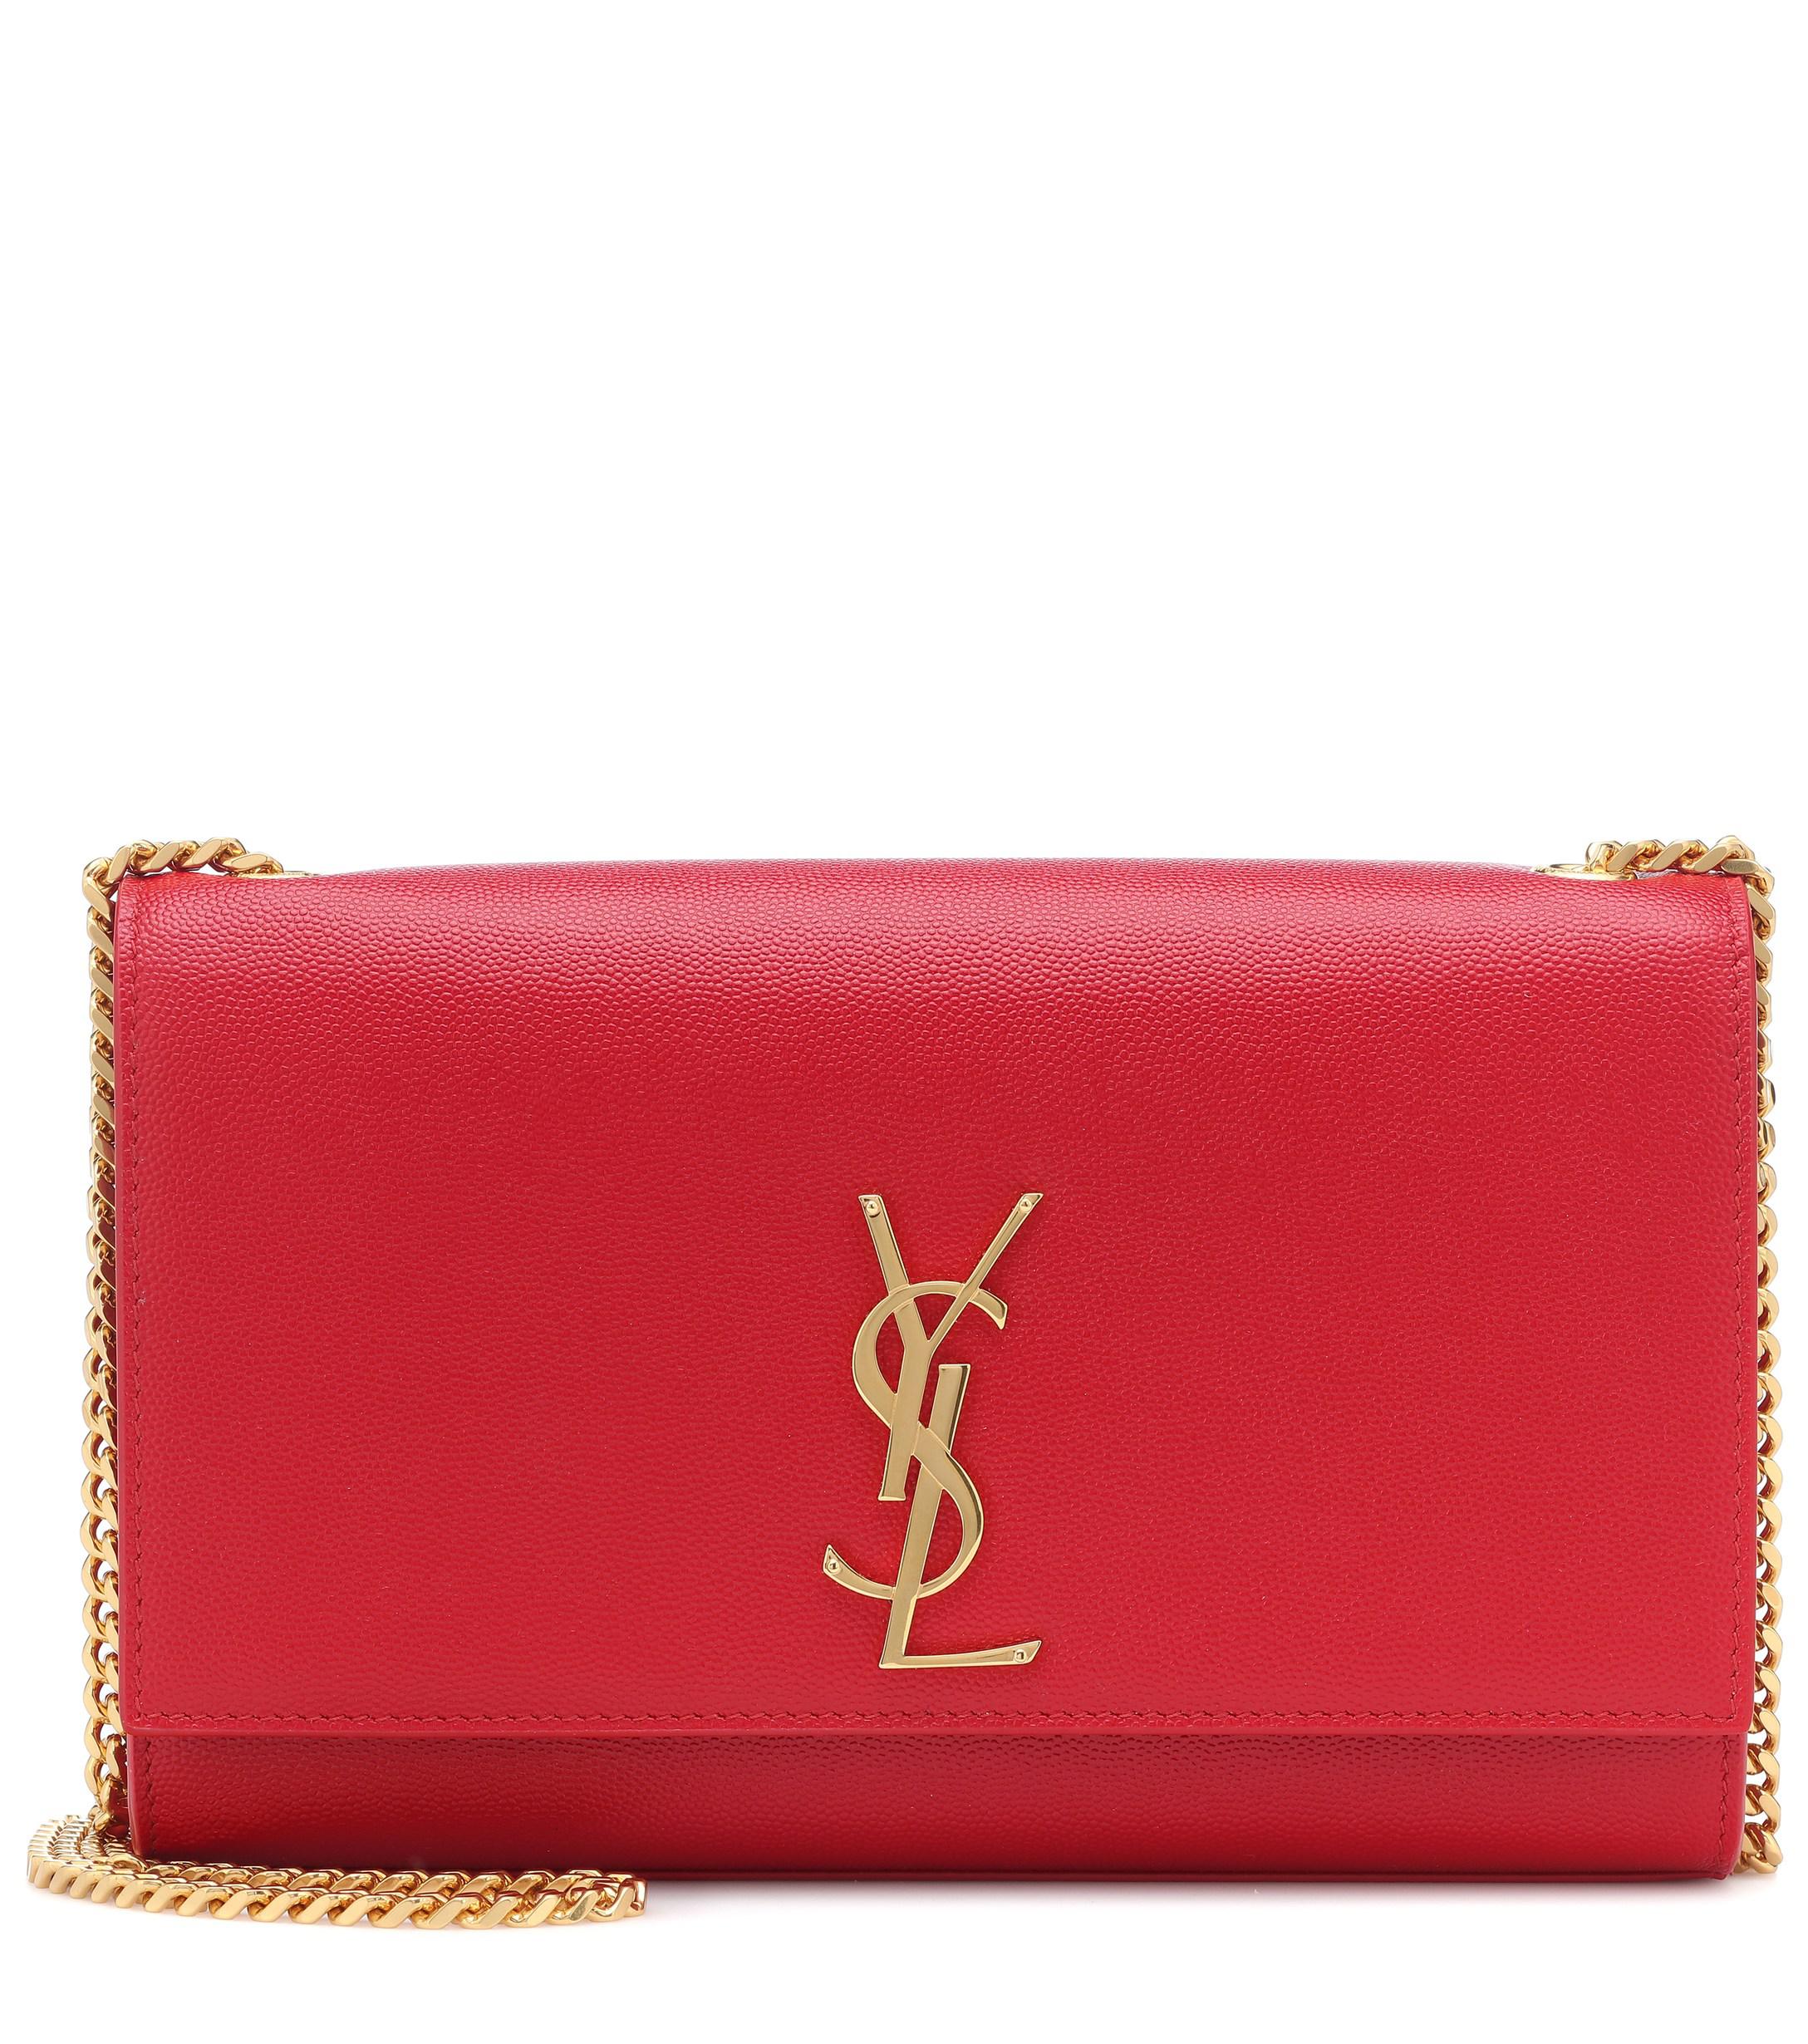 Saint Laurent Medium Kate Leather Shoulder Bag in Red | Lyst